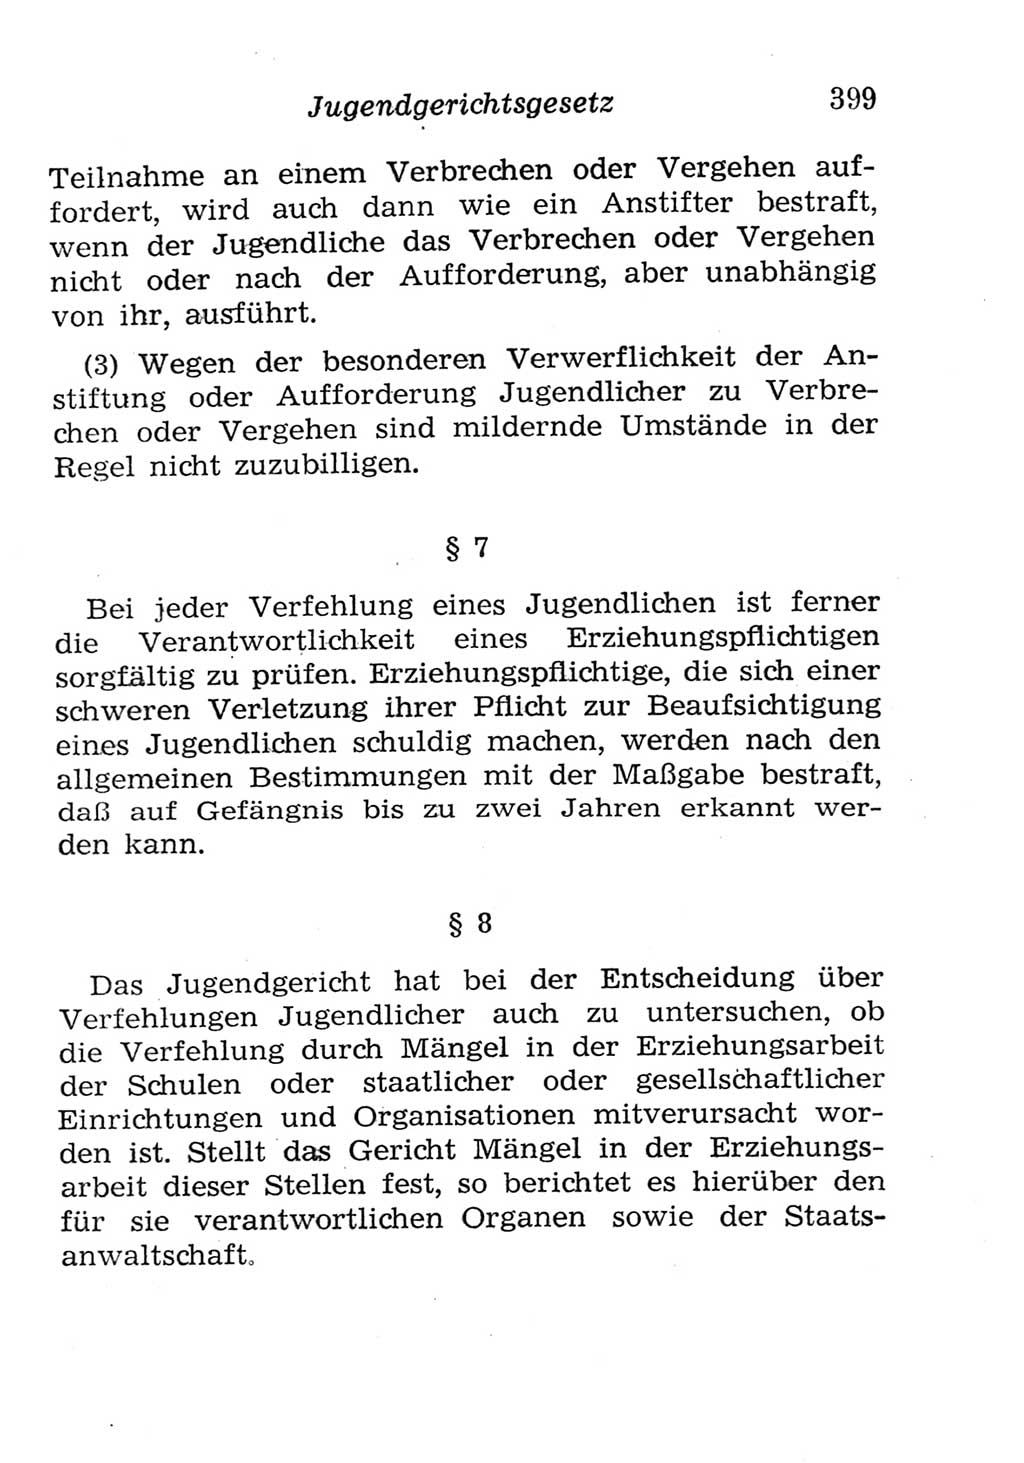 Strafgesetzbuch (StGB) und andere Strafgesetze [Deutsche Demokratische Republik (DDR)] 1957, Seite 399 (StGB Strafges. DDR 1957, S. 399)